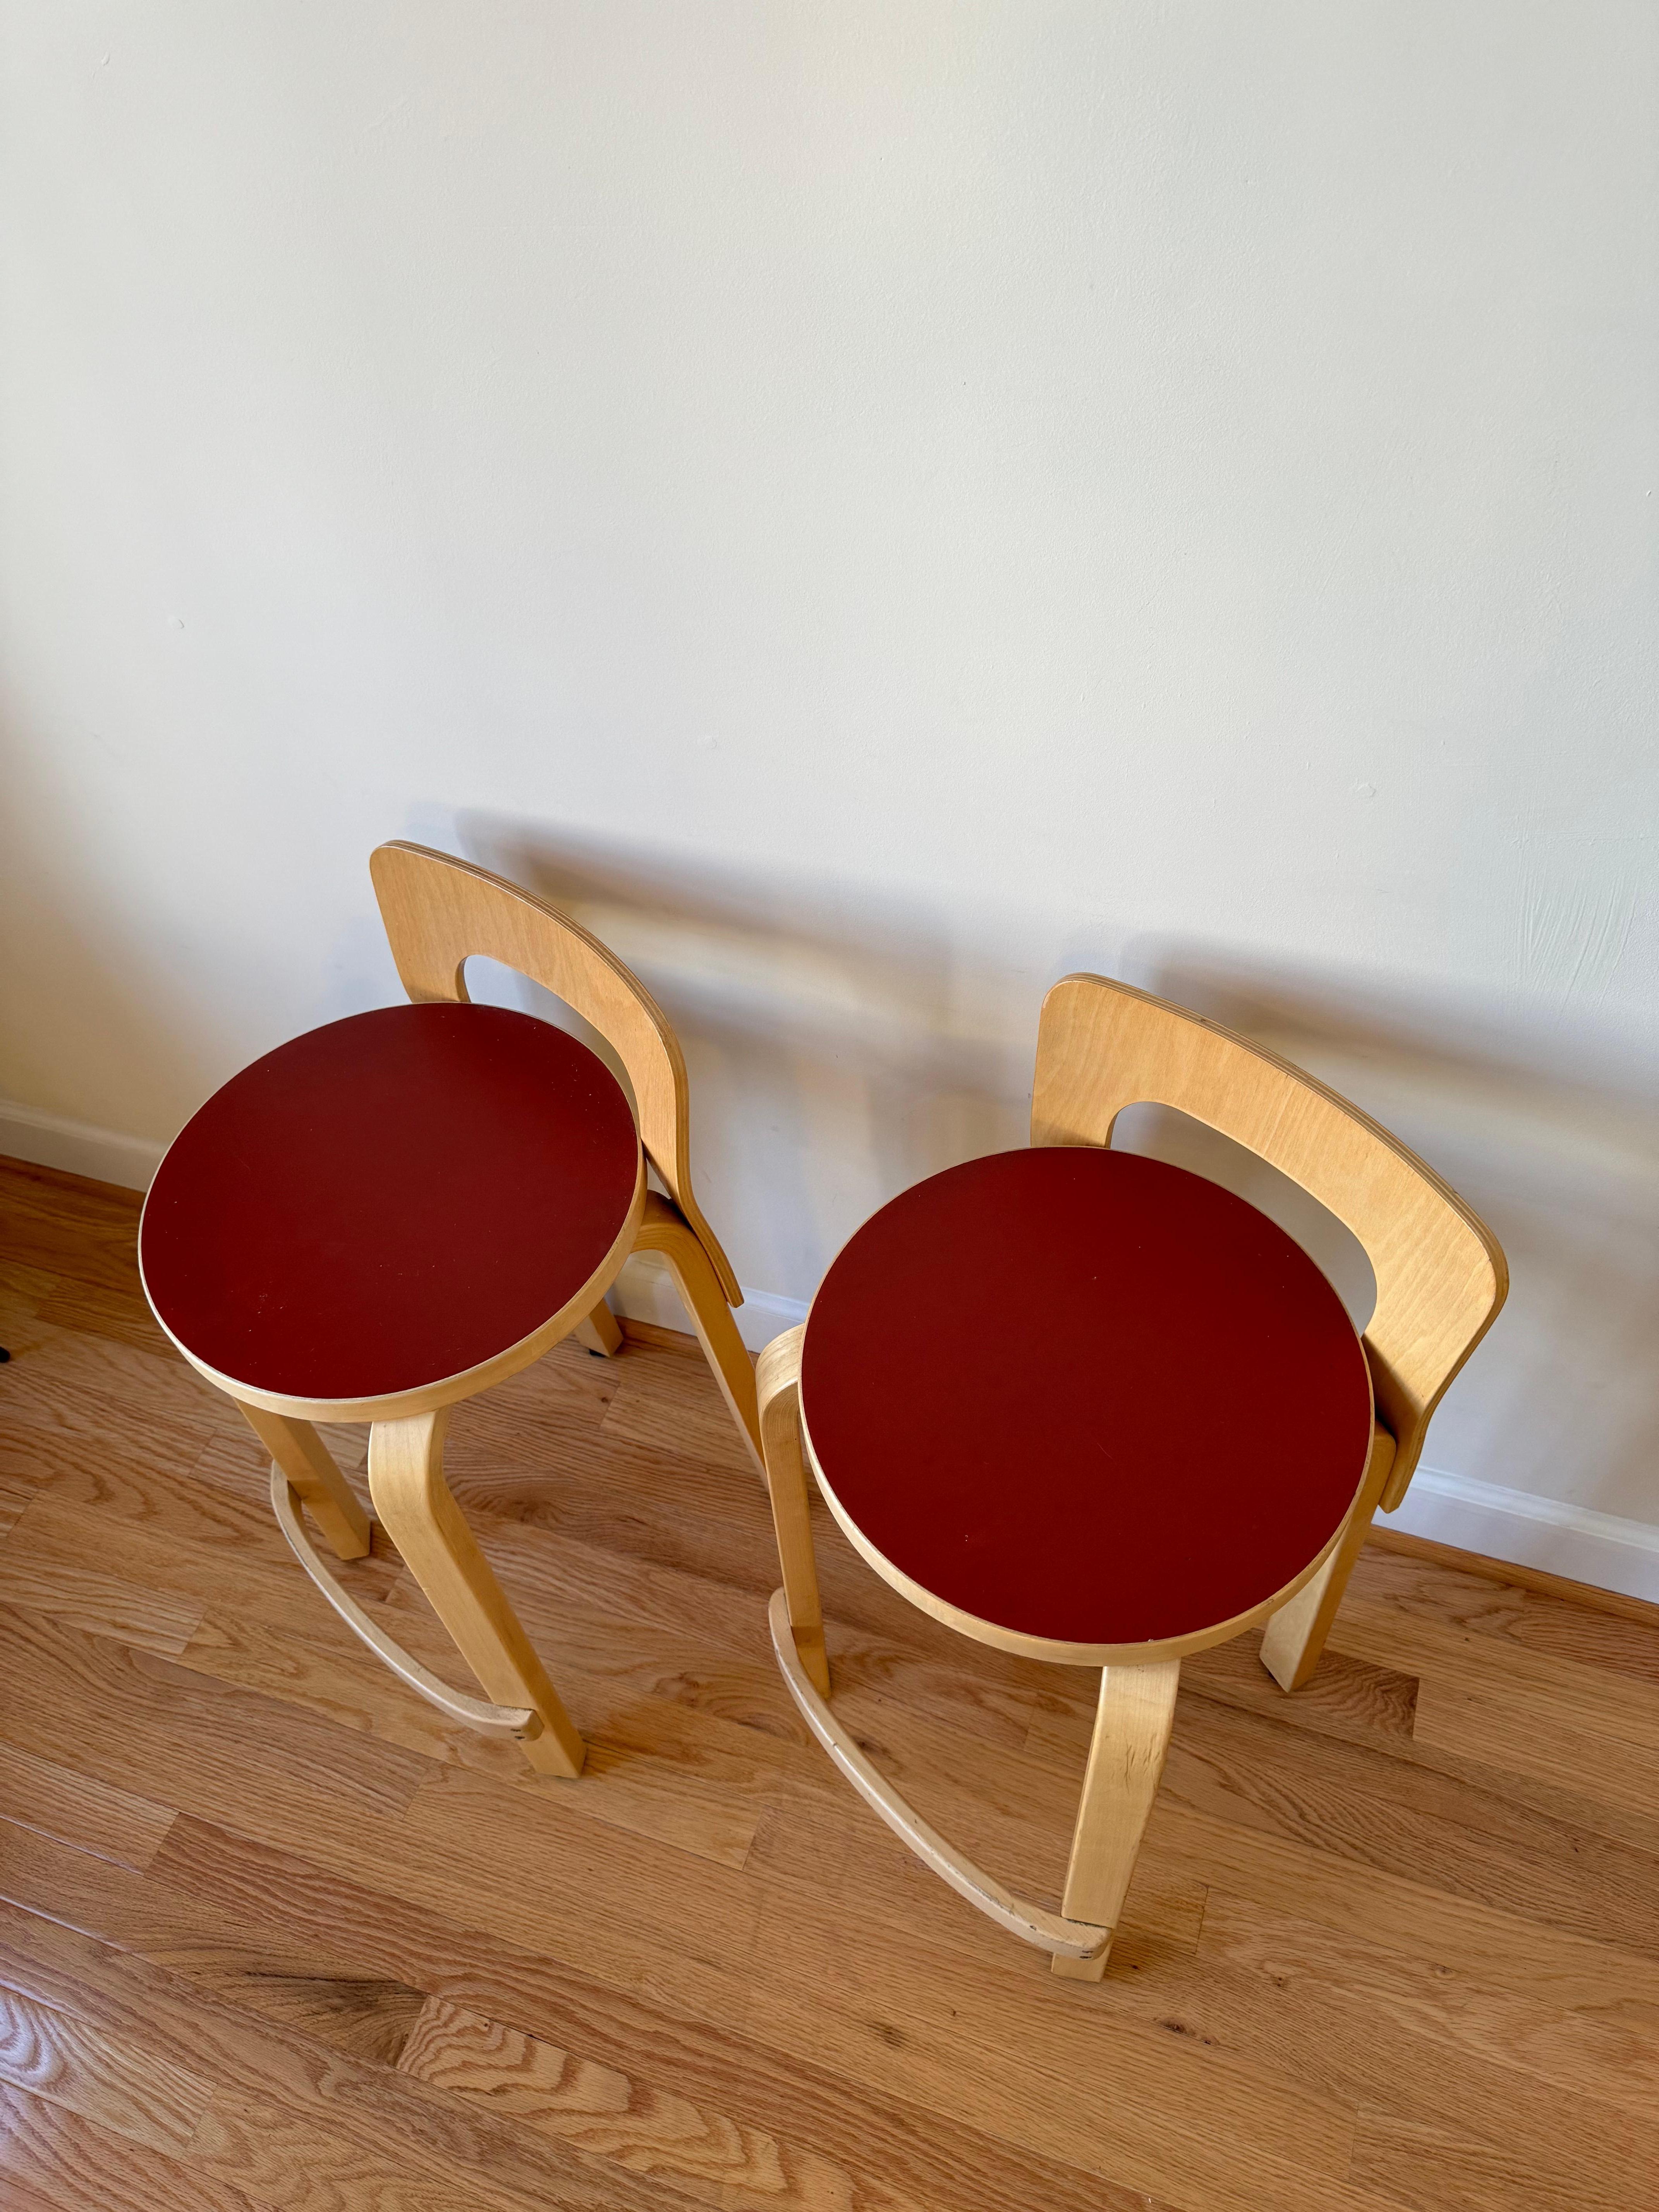 High Chair K65 von Alvar Aalto für Artek (Sitz aus rotem Linoleum) (Bugholz)